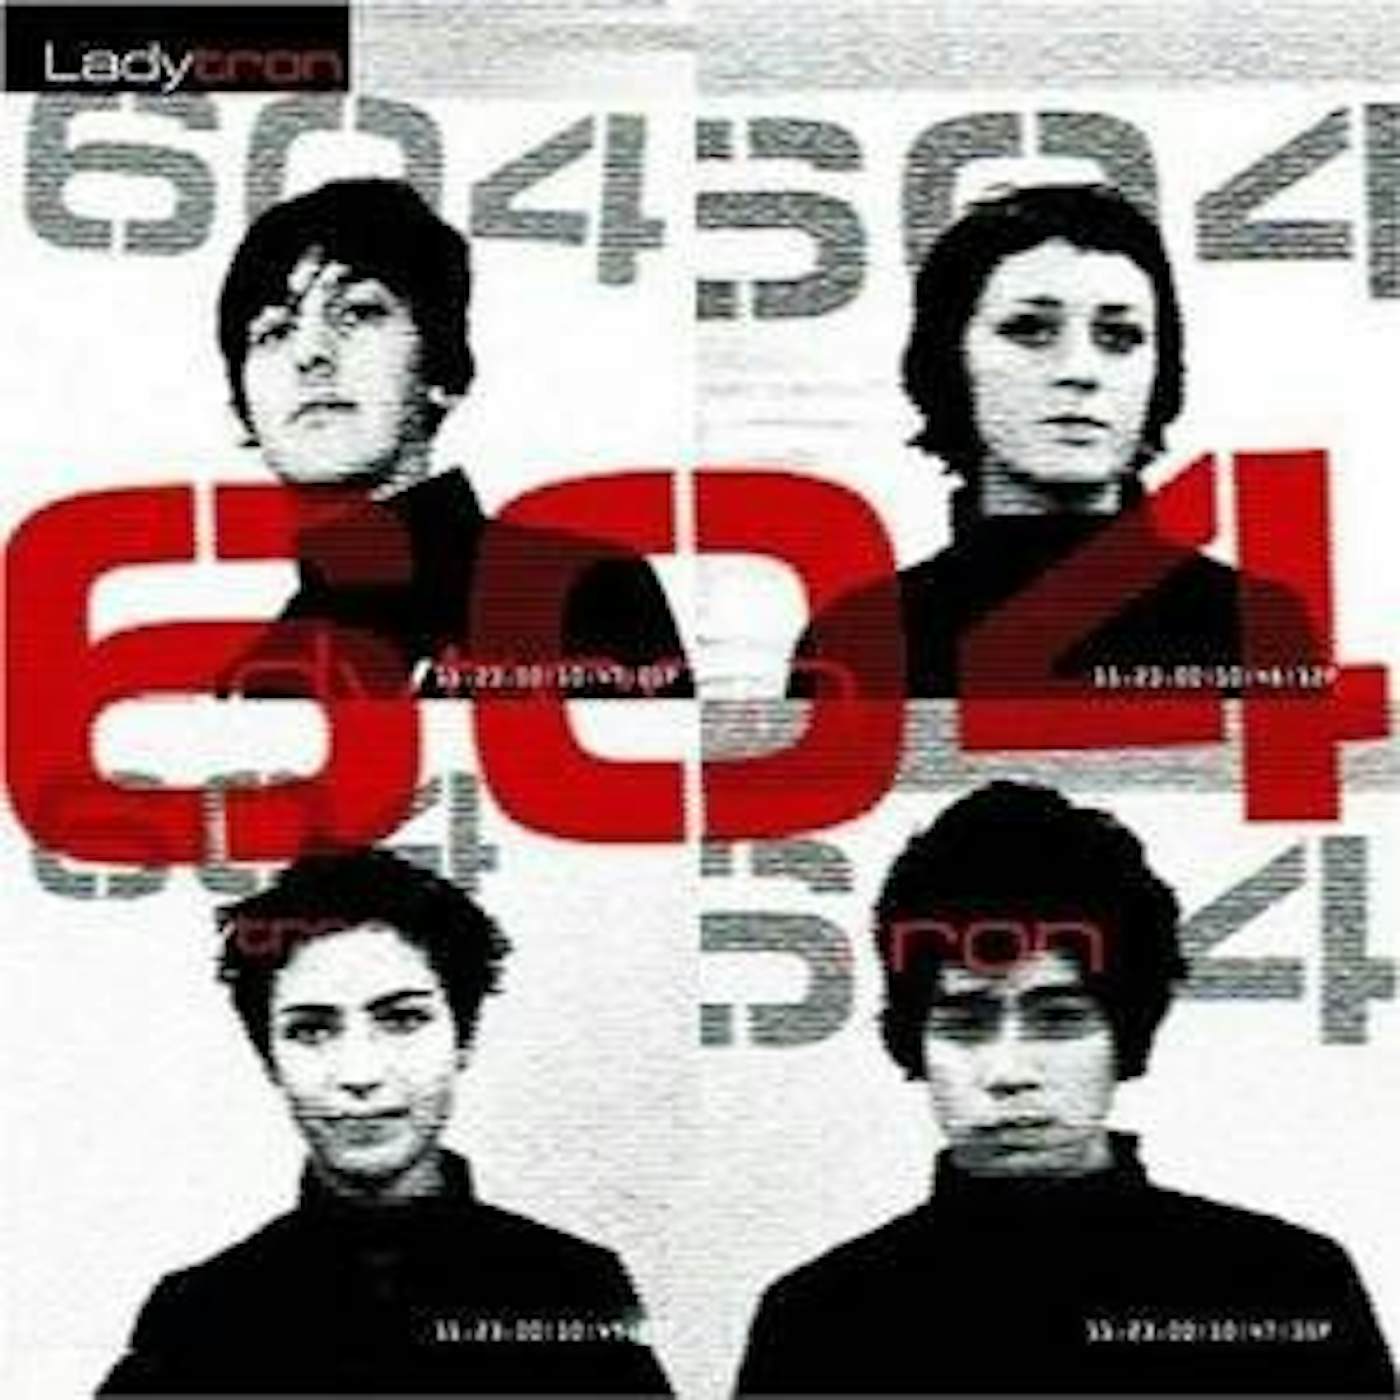 Ladytron 604 CD